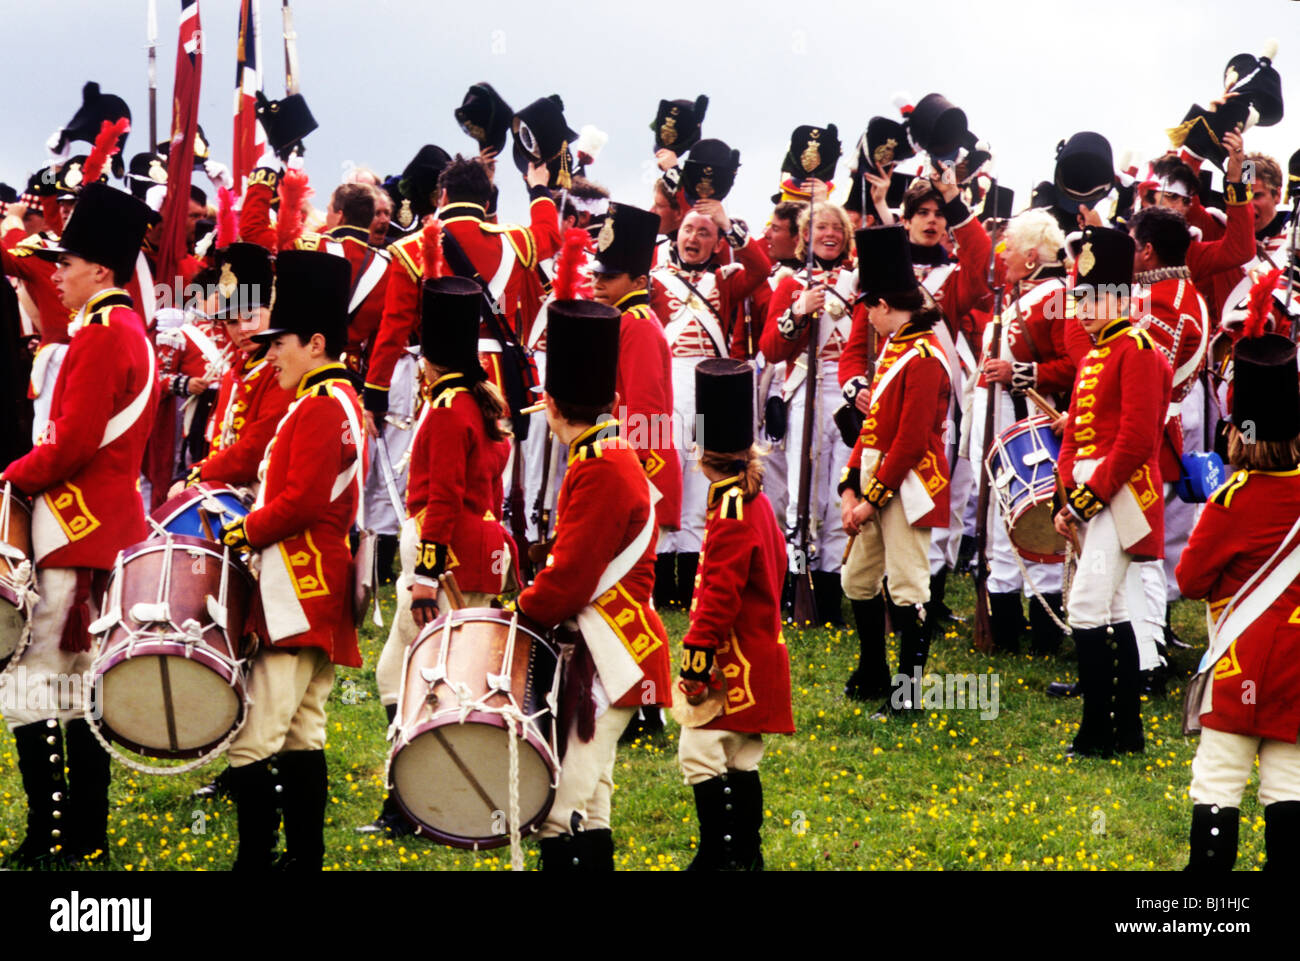 Rievocazione storica, inglese britannico redcoats 1815 Storia militare uniformi uniformi Abbigliamento Costumi costume moda mode Foto Stock